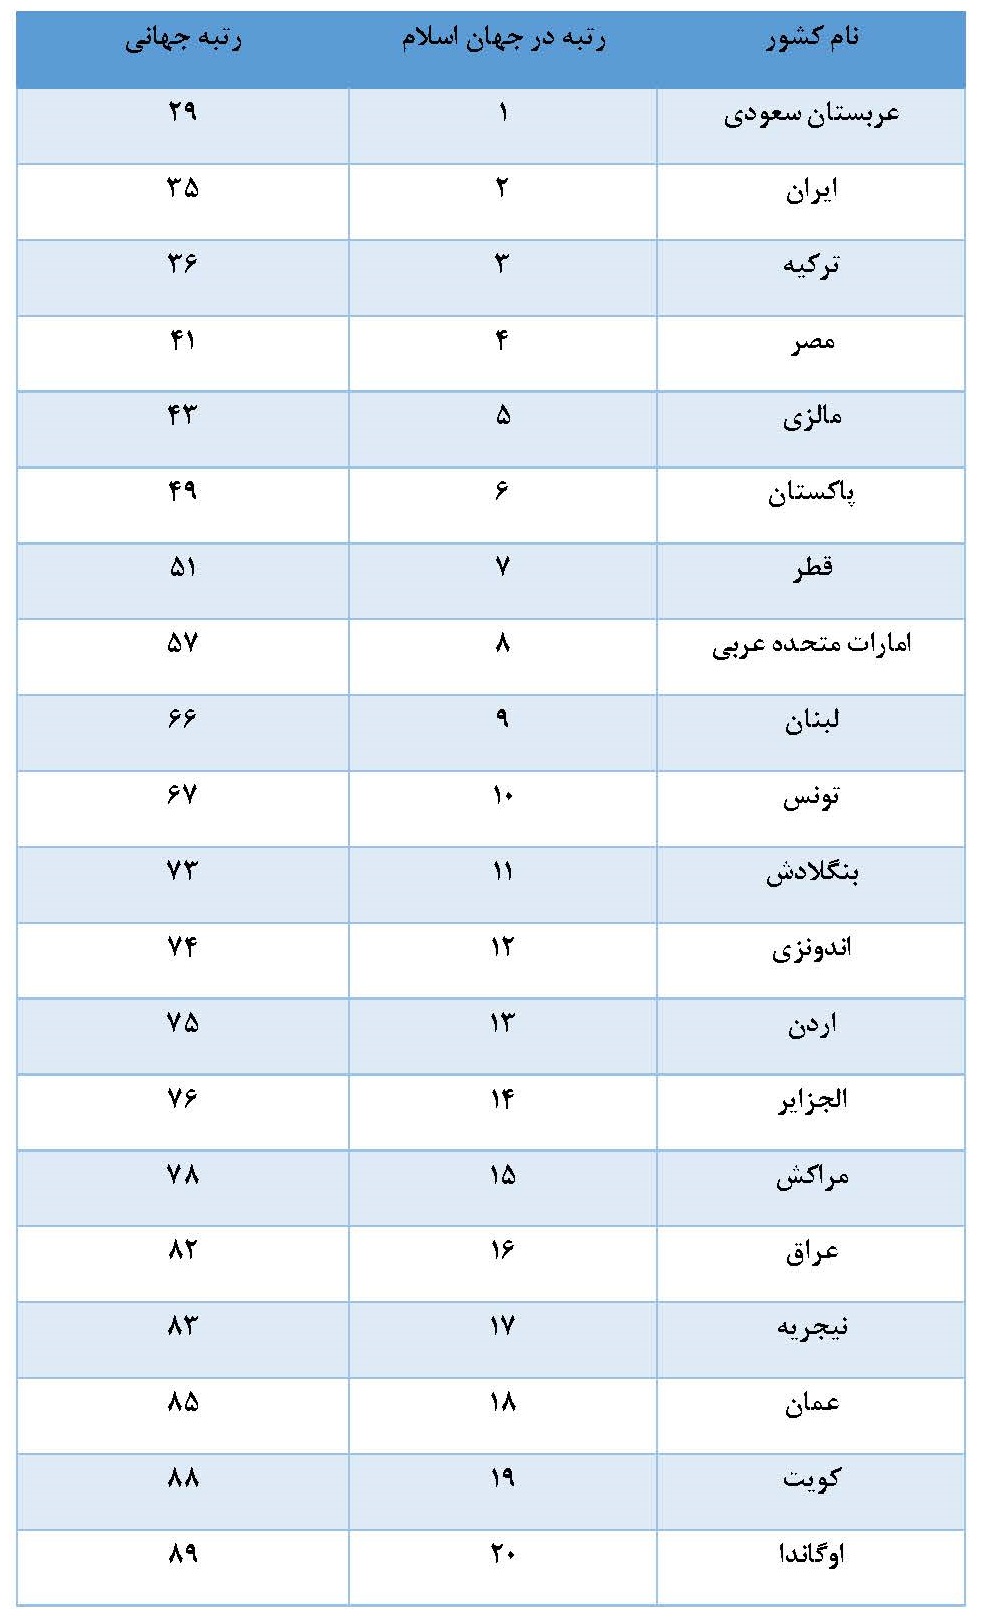 جایگاه ایران و کشورهای اسلامی در تولید علم فناوارنه